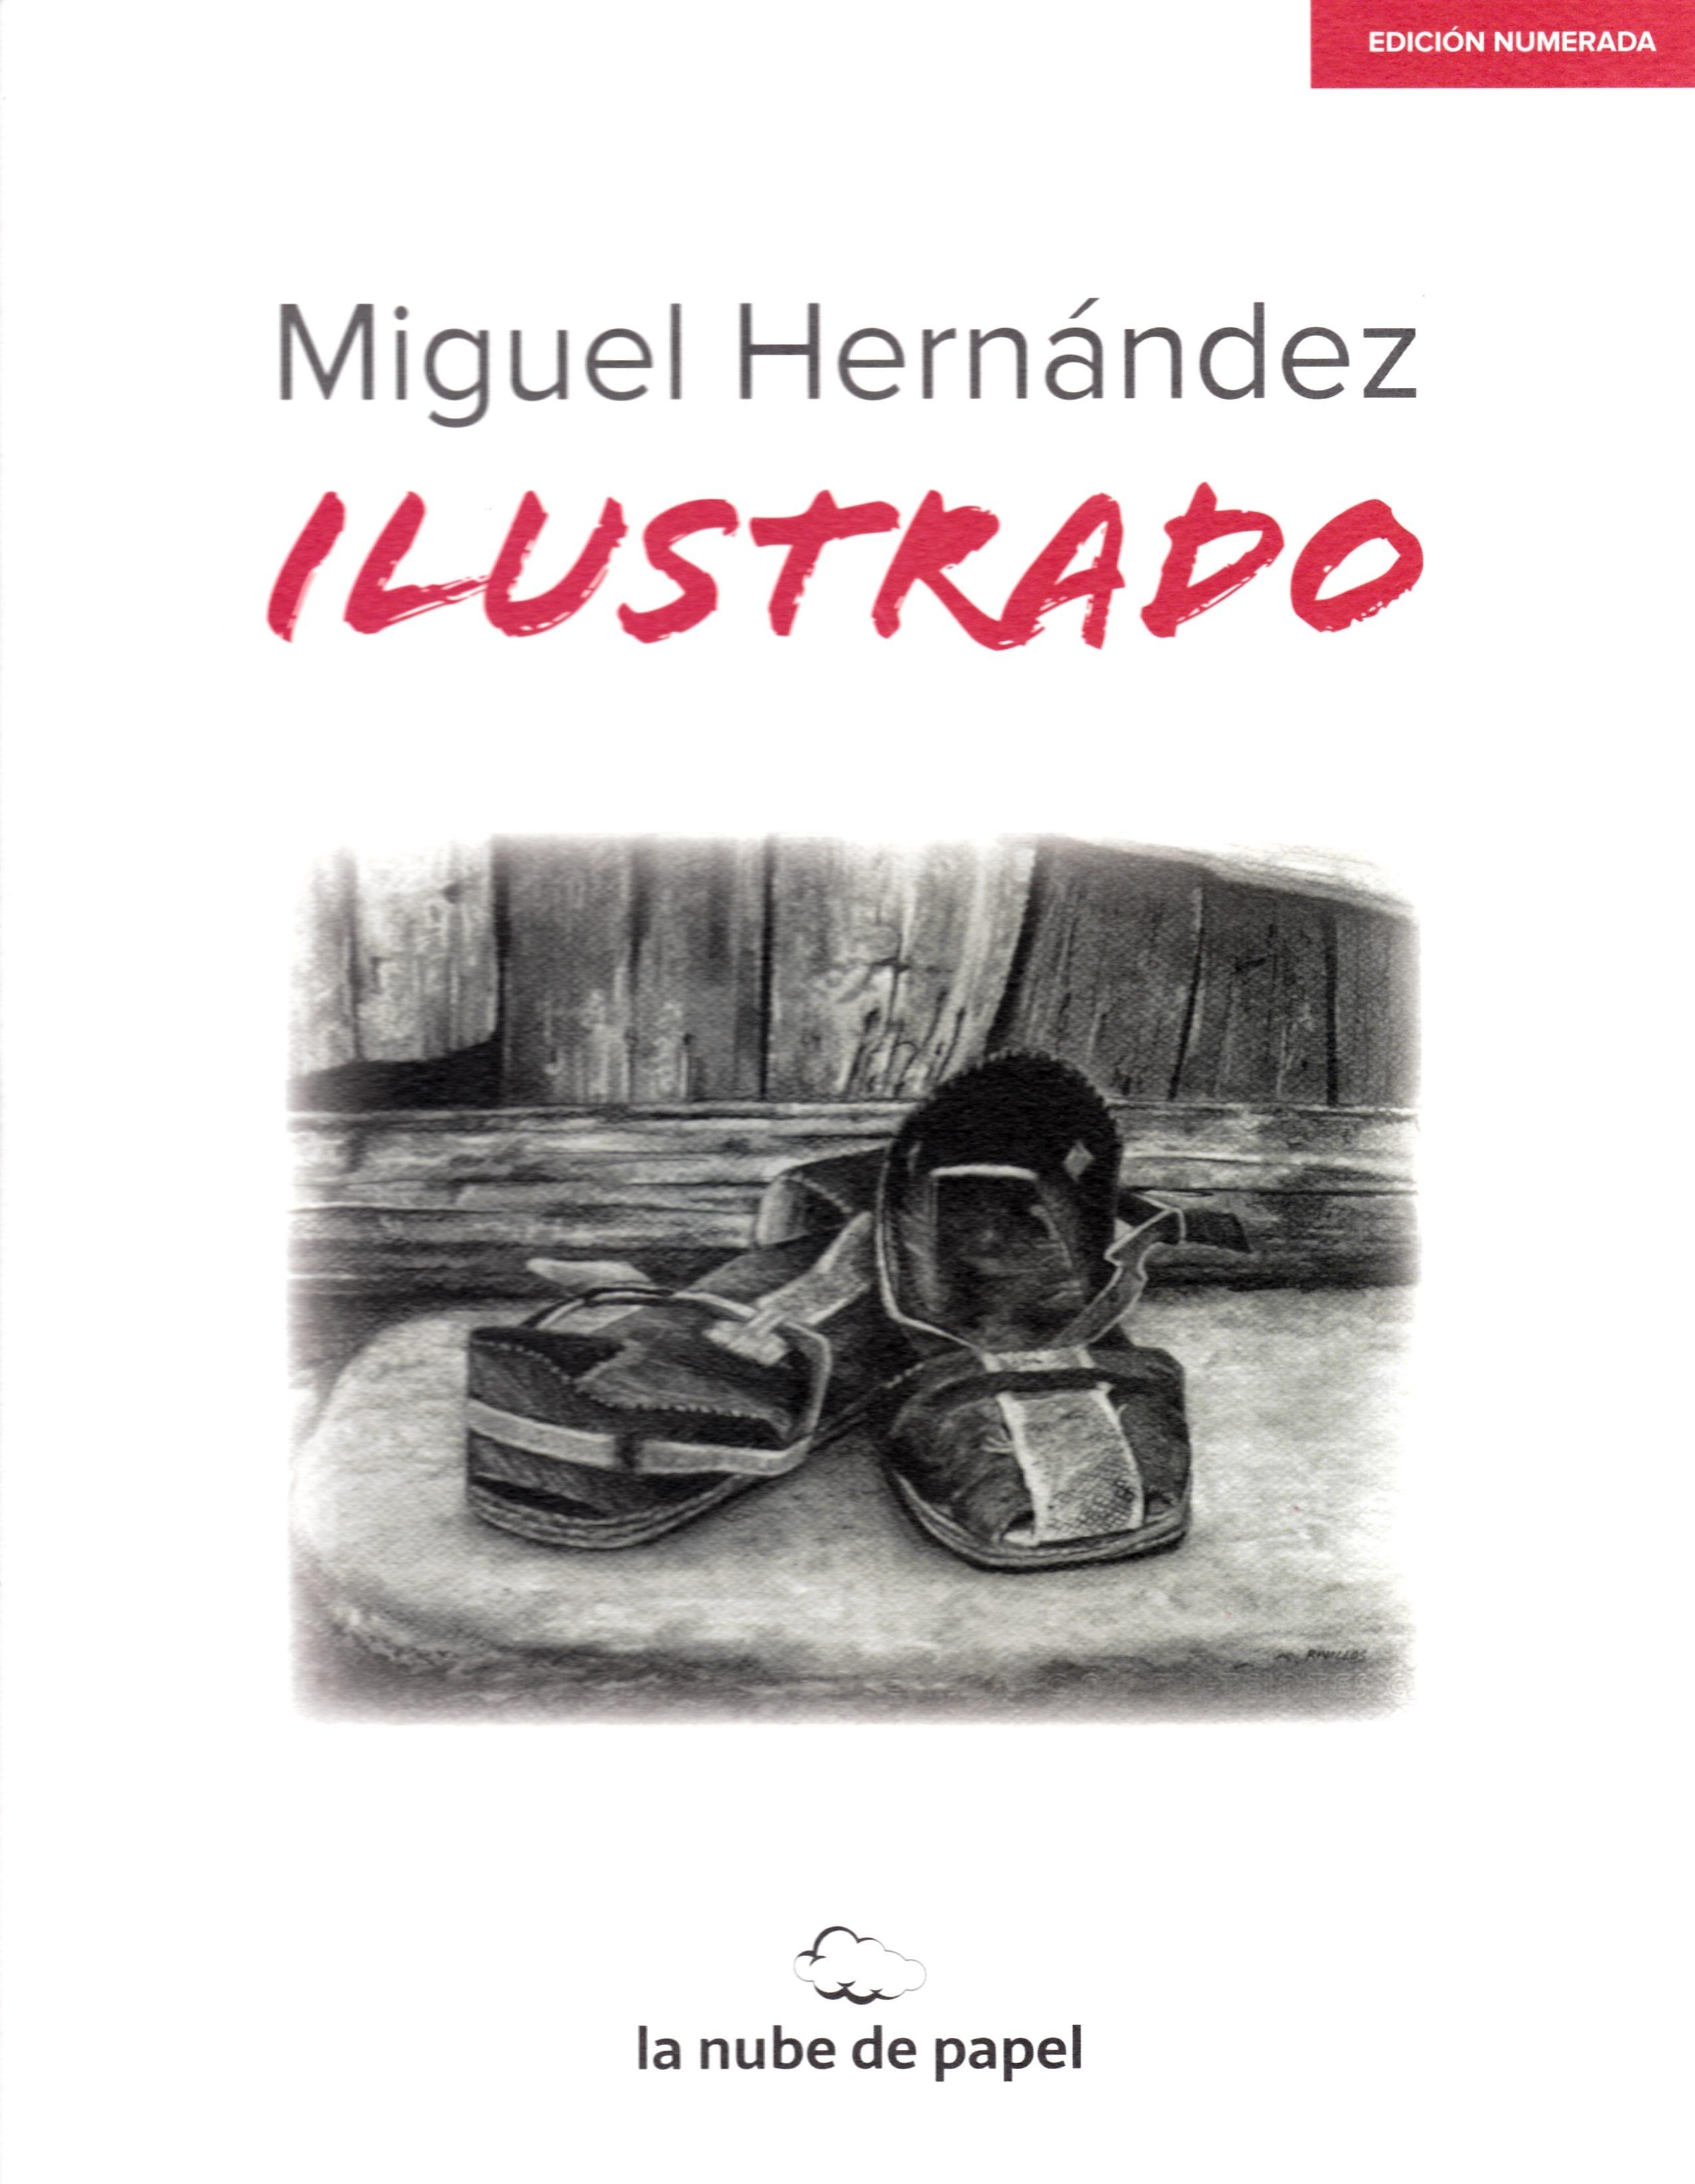 Miguel Hernández "Ilustrado. Edición Numerada"